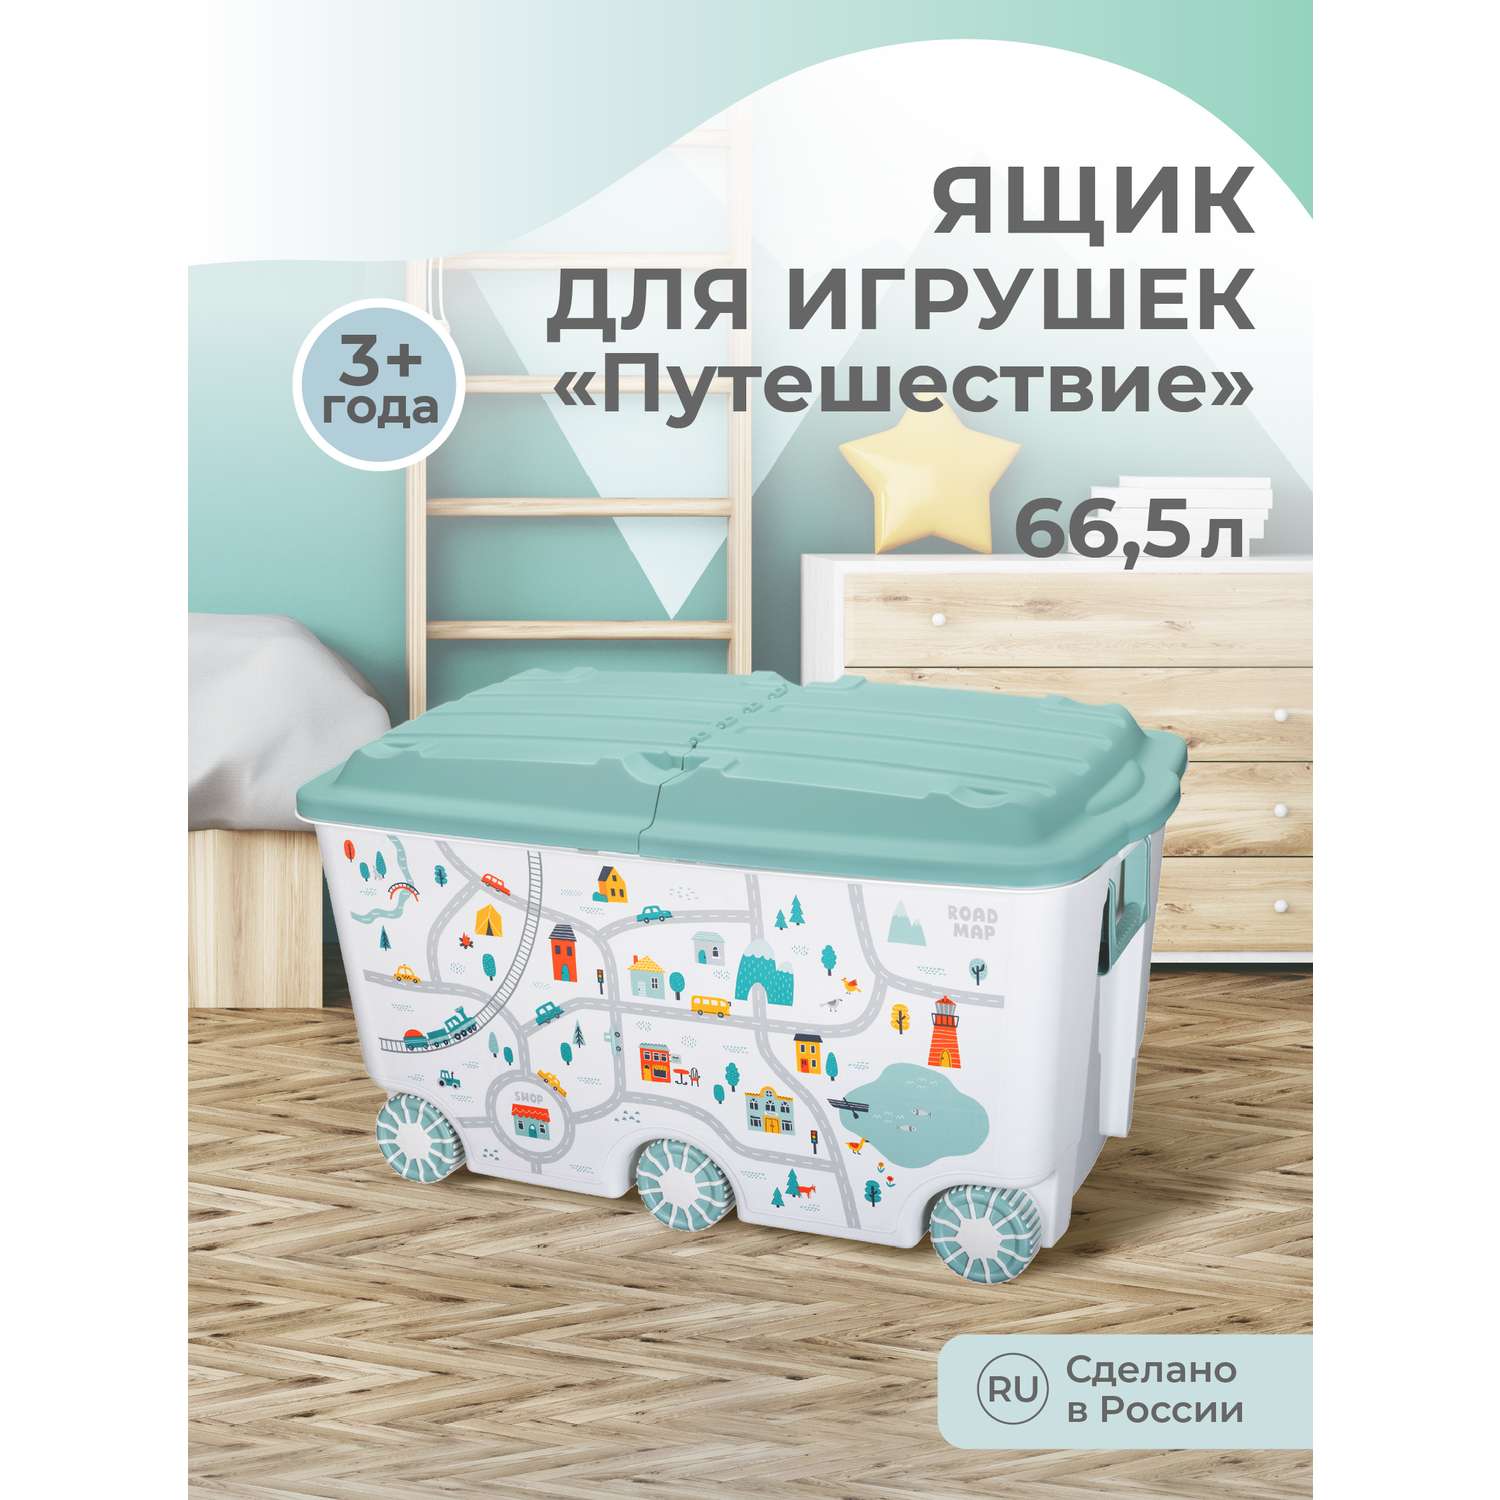 Ящик для игрушек на колесах Пластишка с декором Путешествие 66.5л светло-голубой - фото 1